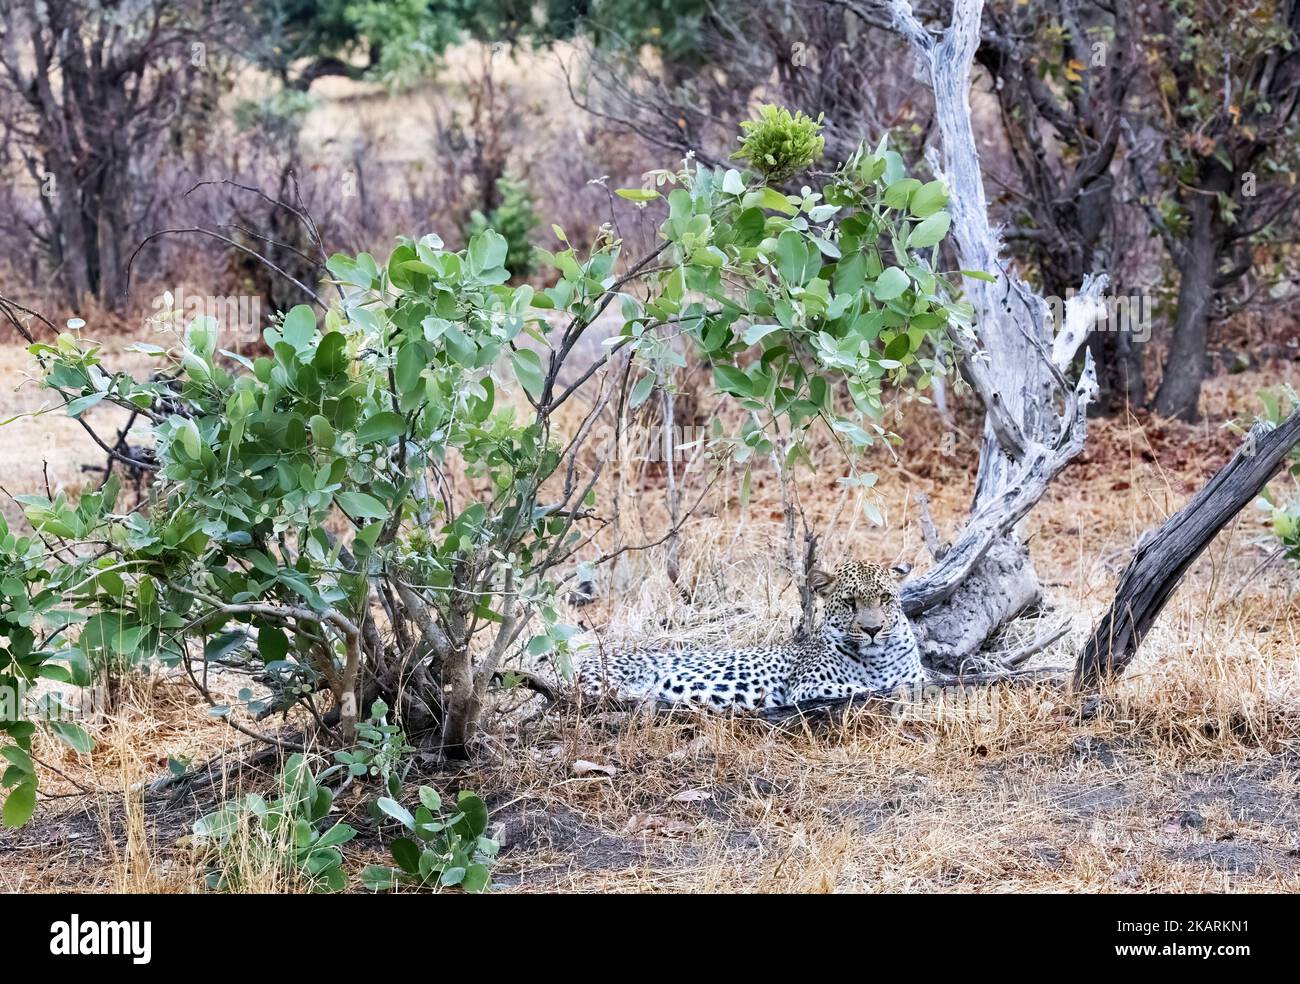 Getarnter männlicher Leopard, Panthera pardus, liegt im Okavango-Delta, Botswana Afrika. Afrikanische Wildtiere Stockfoto